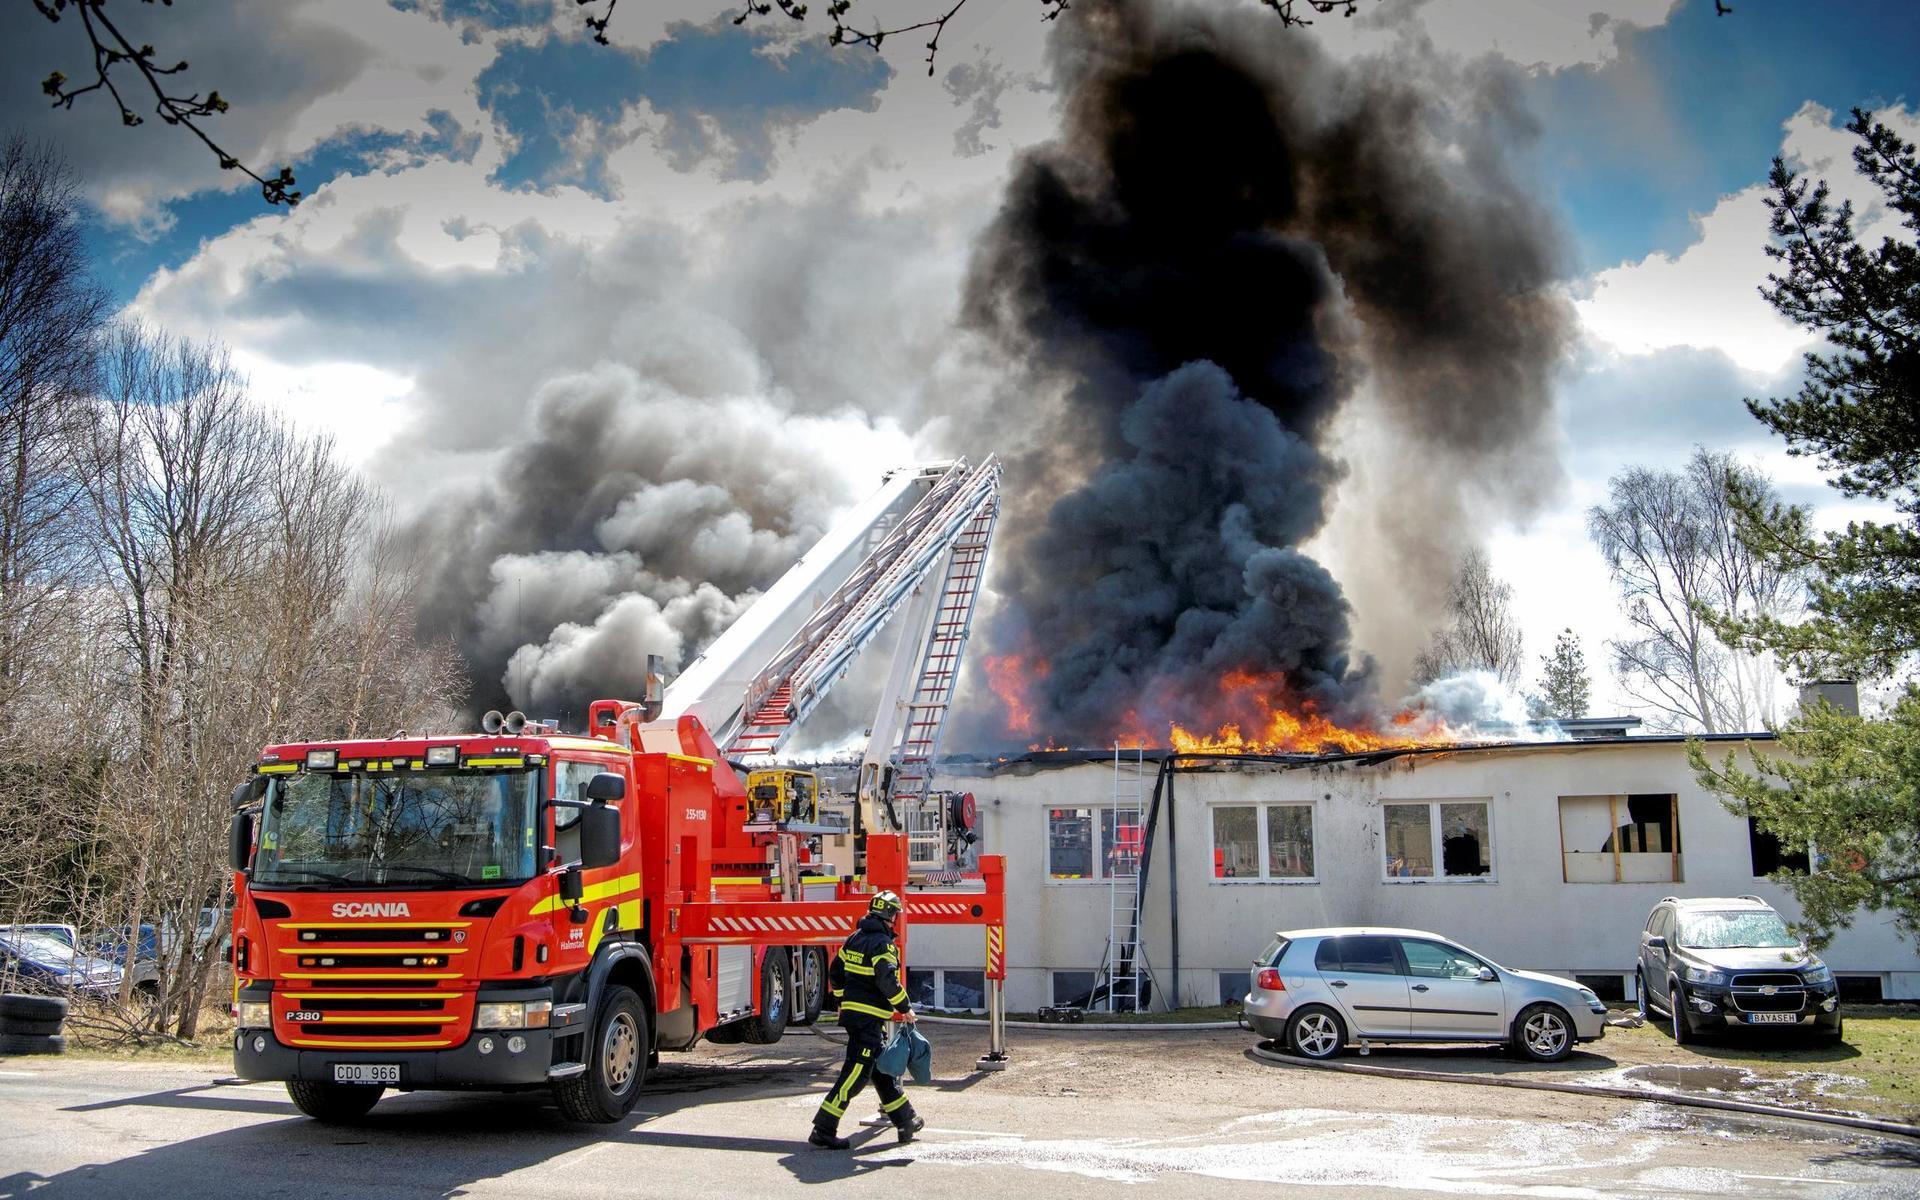 Bilverkstaden, som förstördes i söndagens brand i Rydöbruk, hade startat verksamheten utan godkänt bygglov. ”Vi stod i begrepp med att upprätta ett tillsynsärende”, säger Siv Modée, bygg- och miljöchef på Hylte kommun.